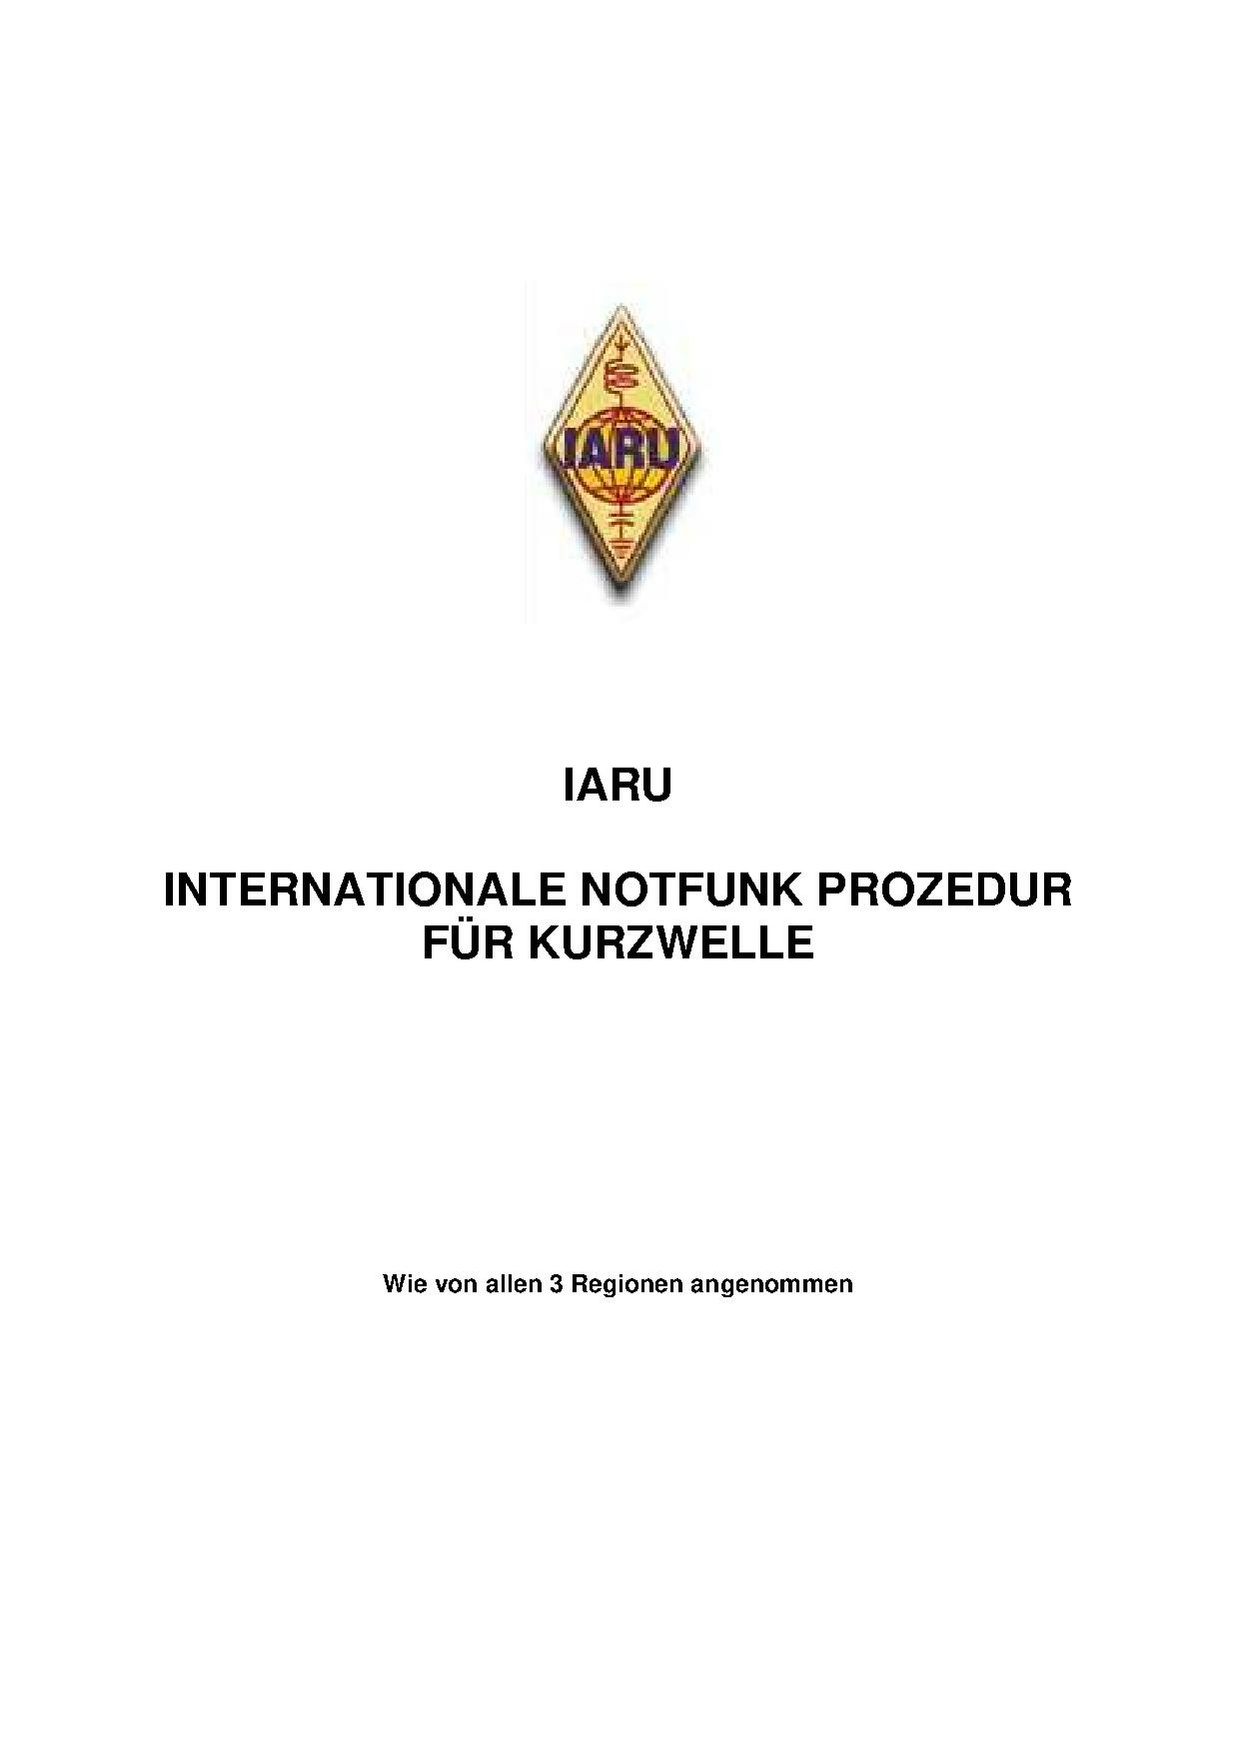 IARU Notfunk Prozedur.pdf